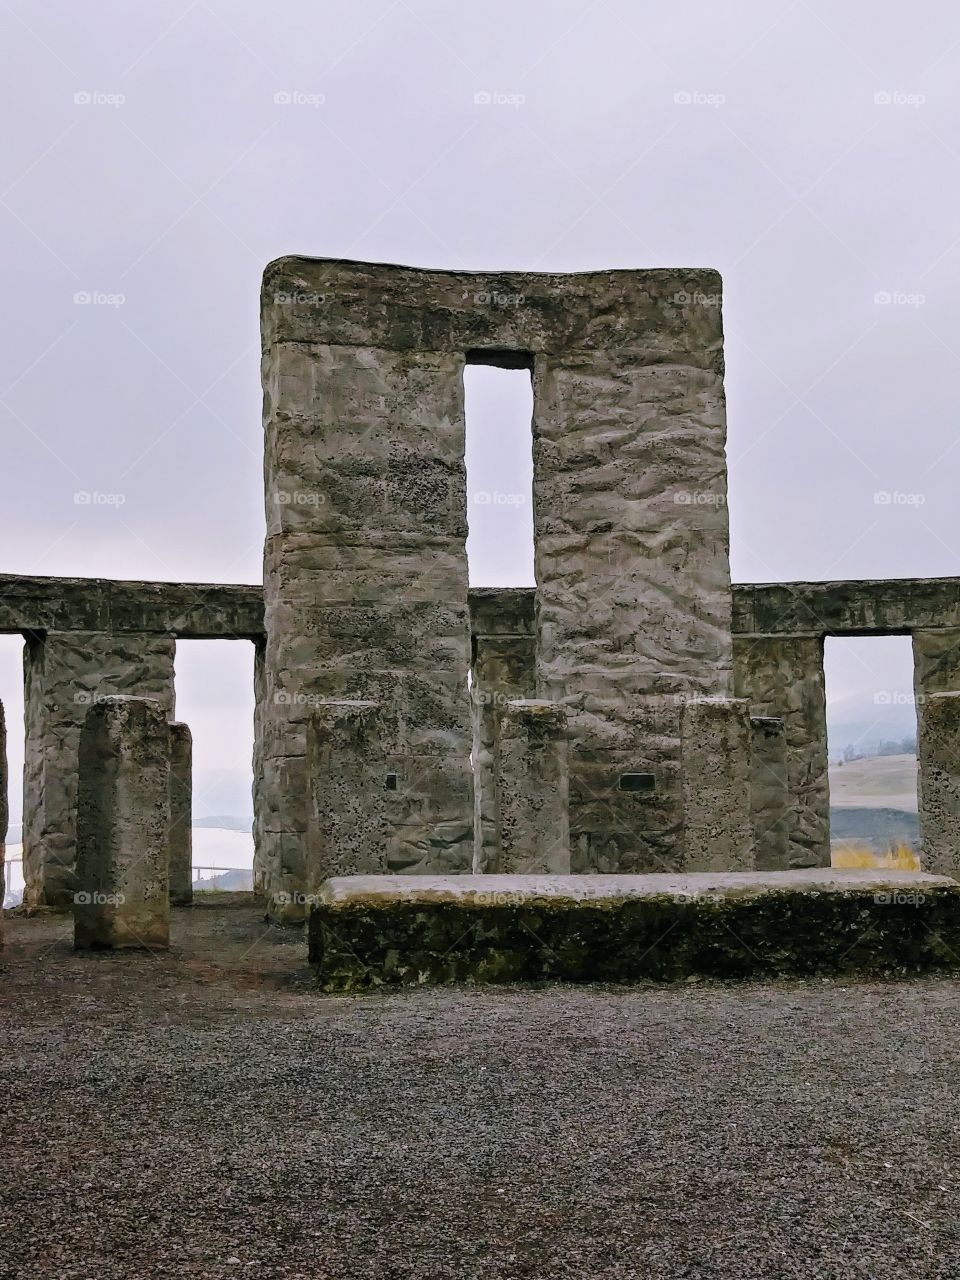 pillars of stone